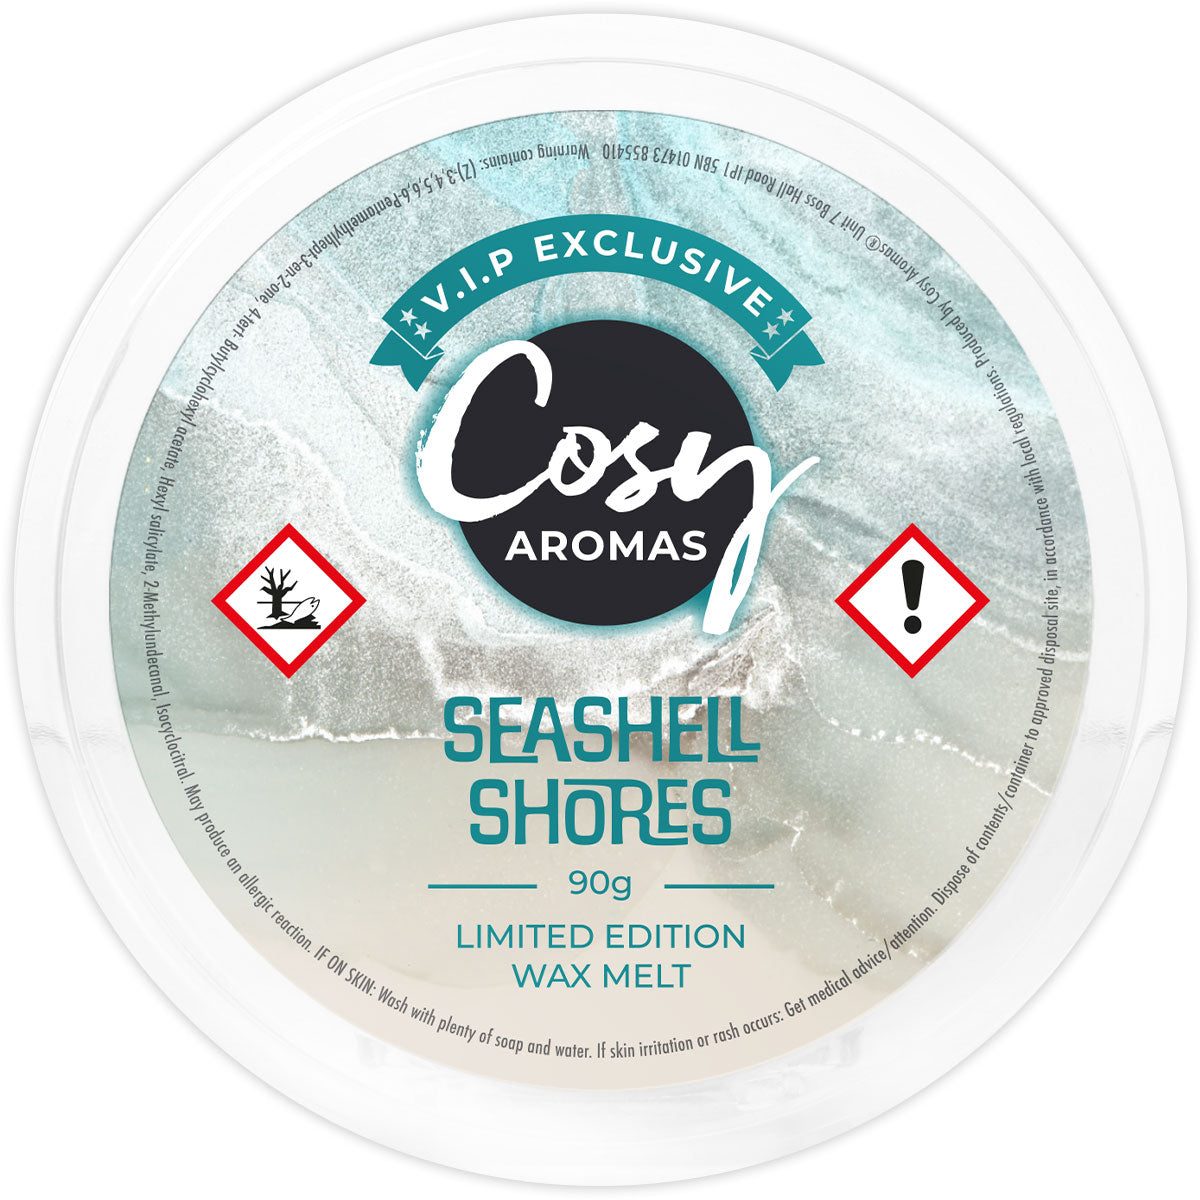 Seashell Shores VIP Exclusive Wax Melt.